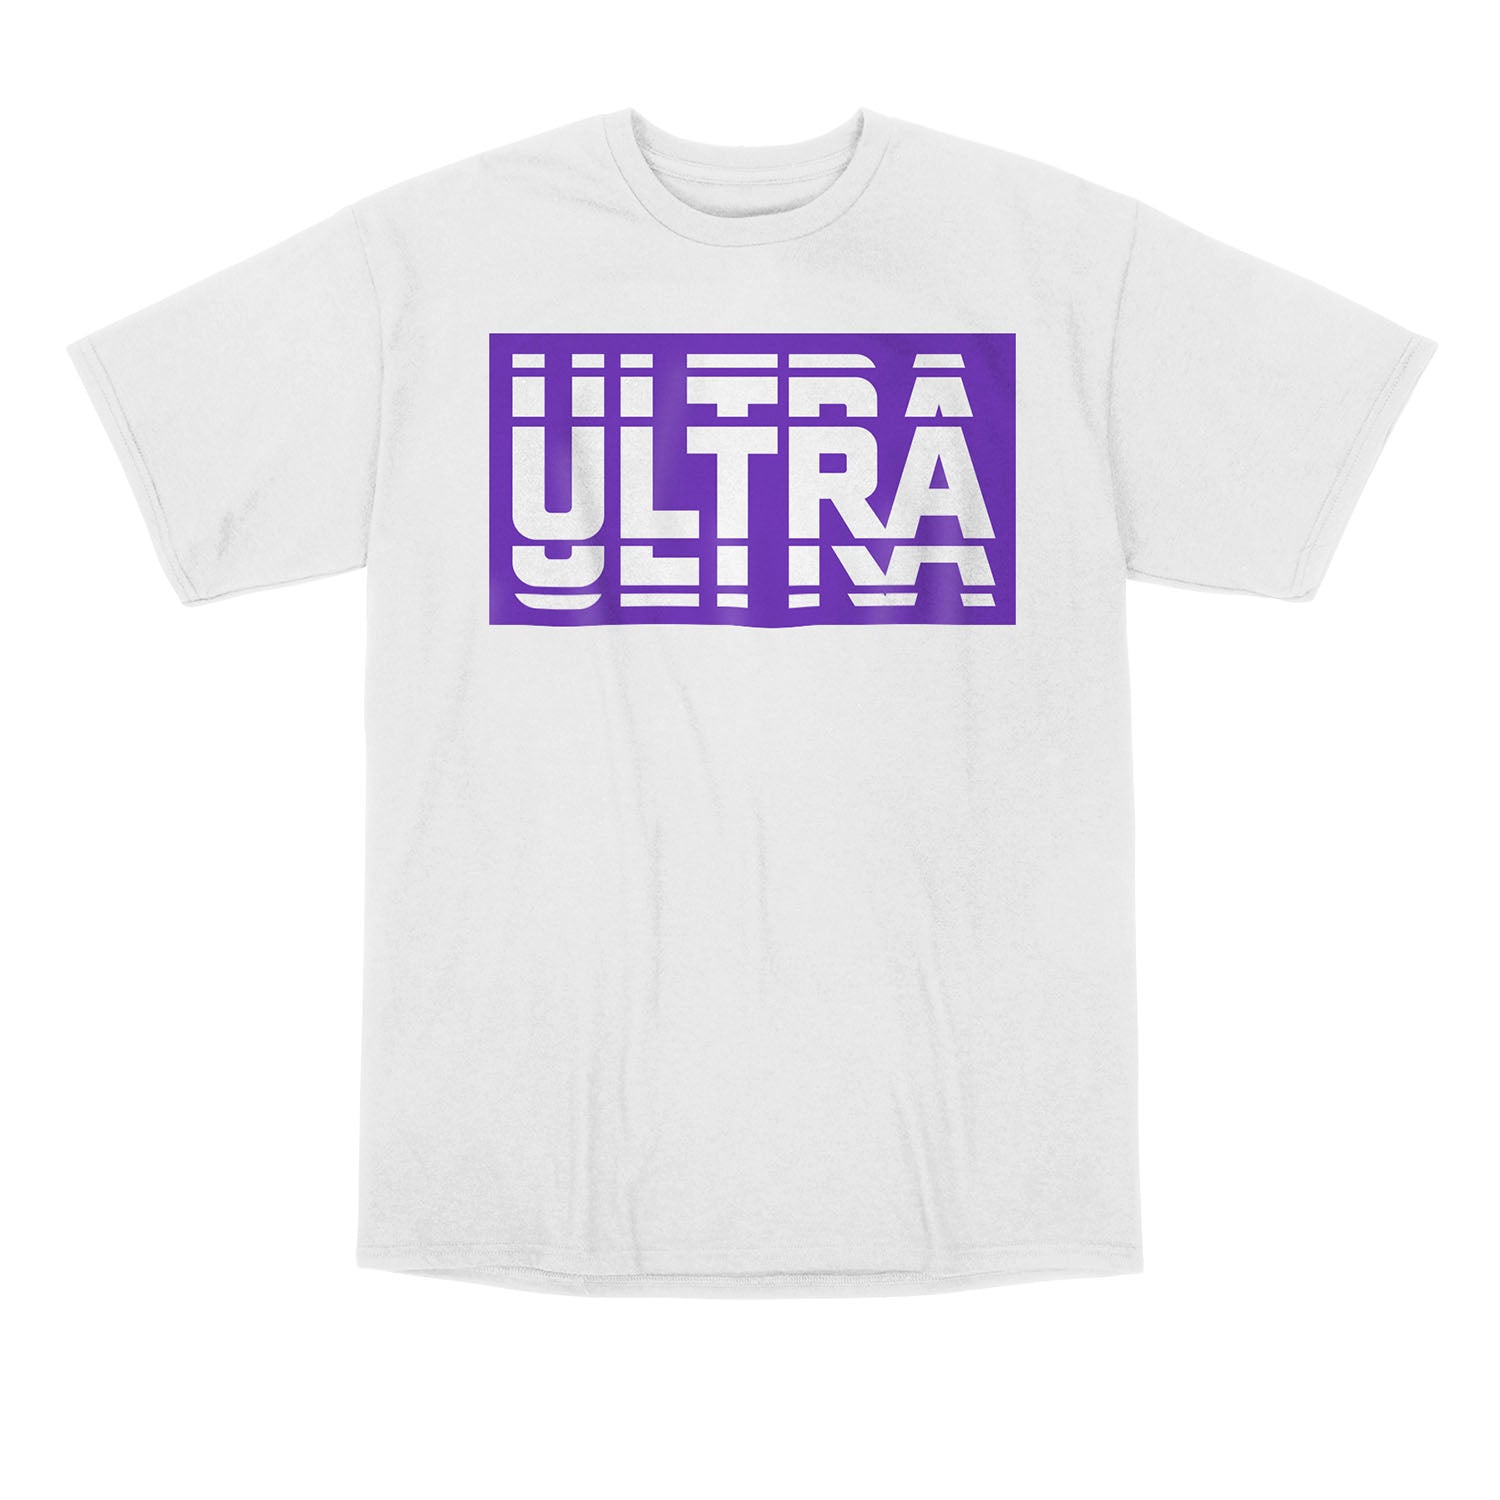 Toronto Ulta Native White T-Shirt